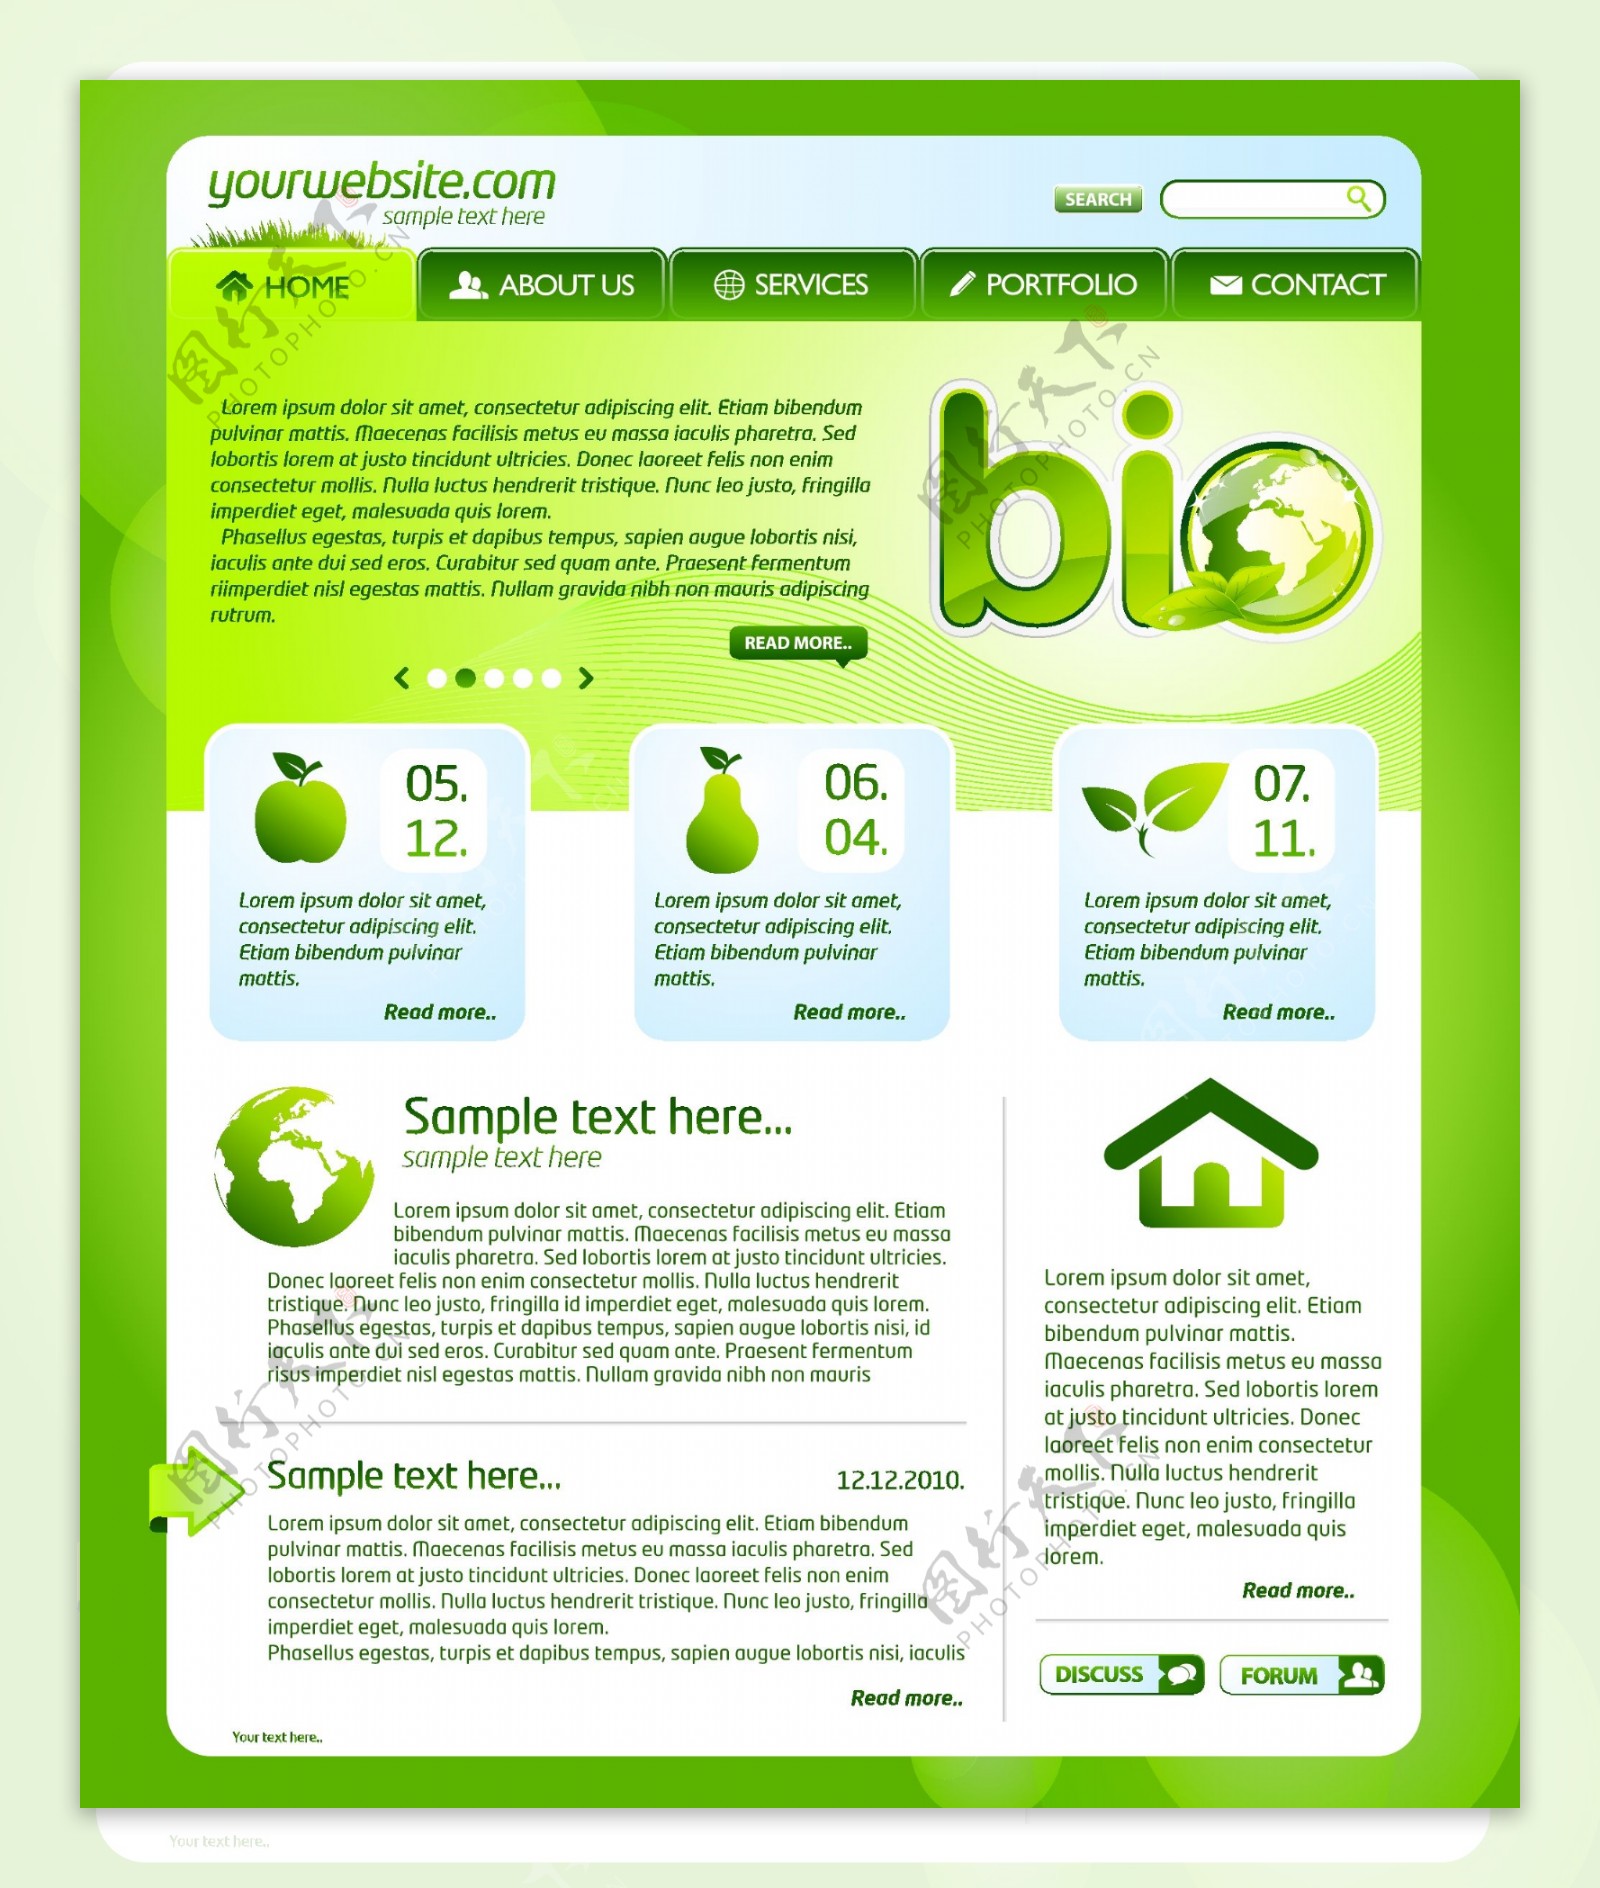 一些绿色主题的网页设计模板矢量素材